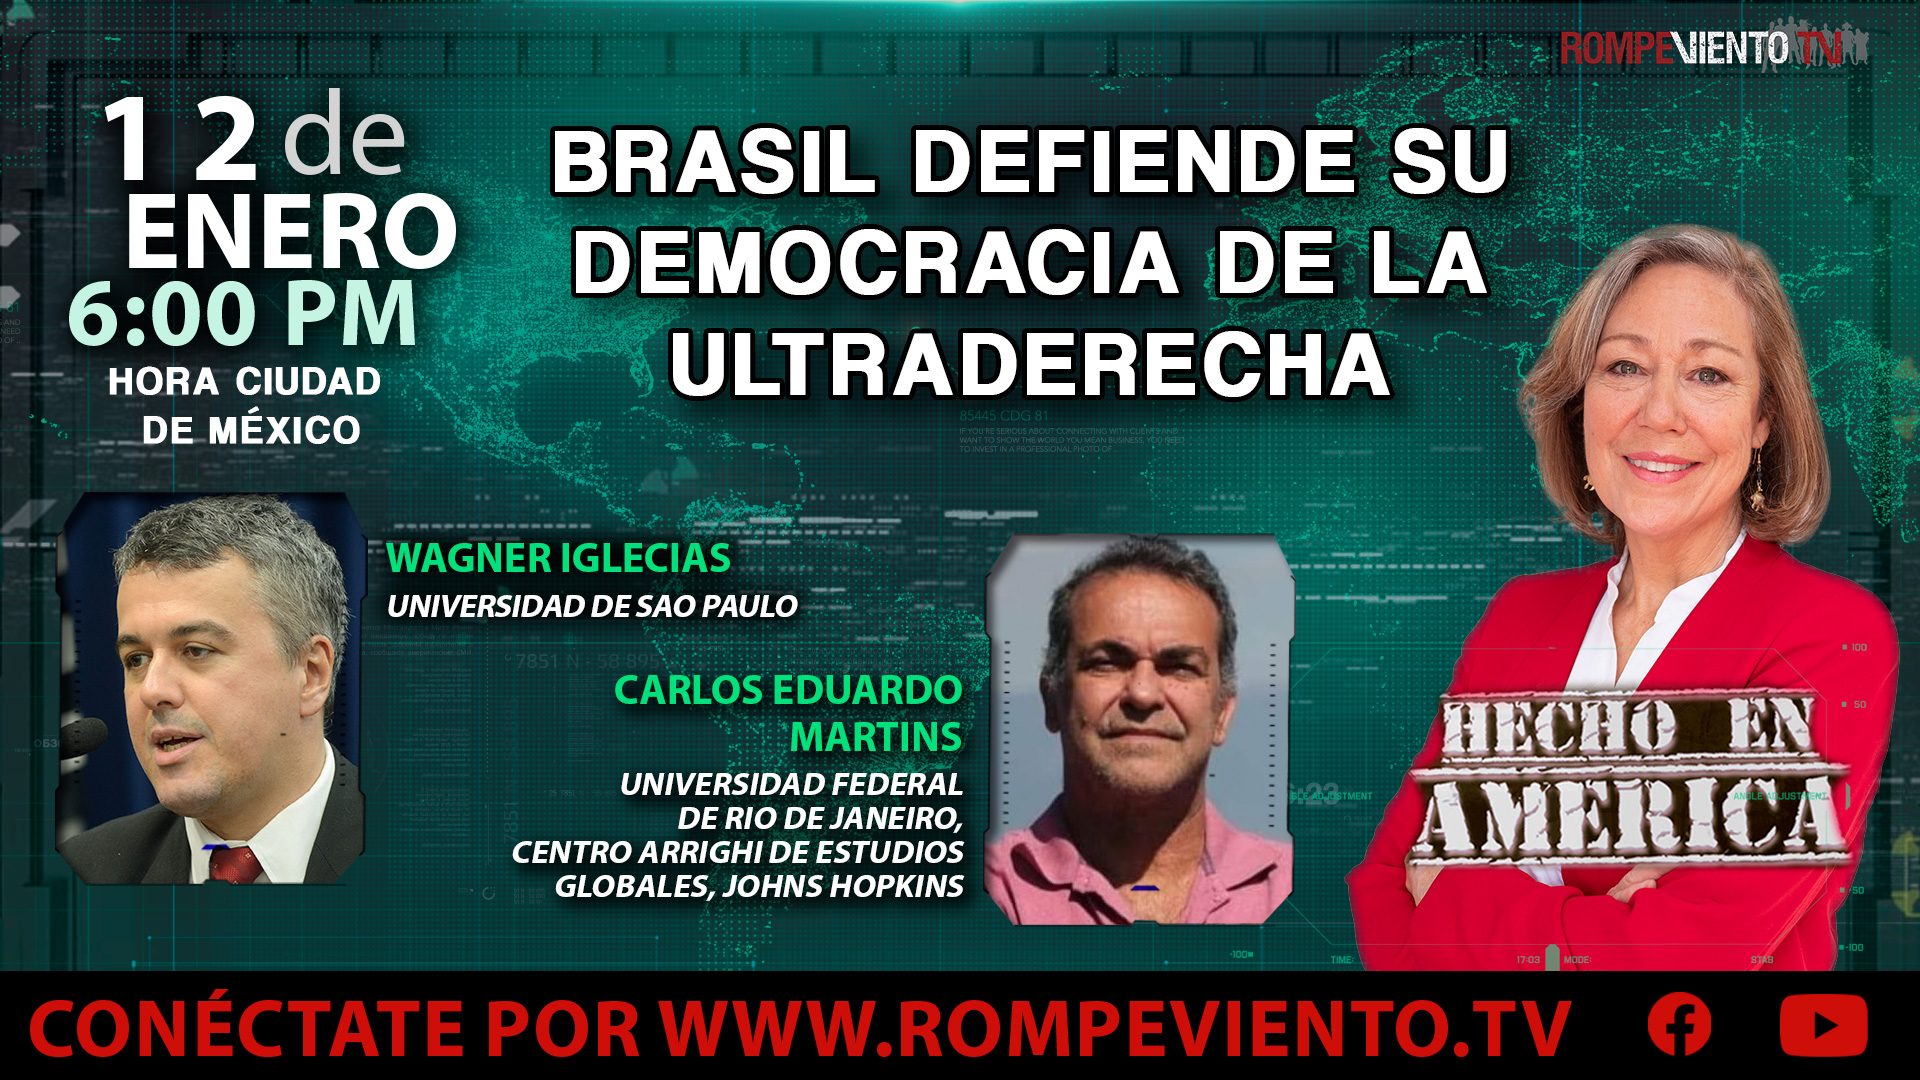 Brasil defiende su democracia de la ultraderecha - Hecho en América